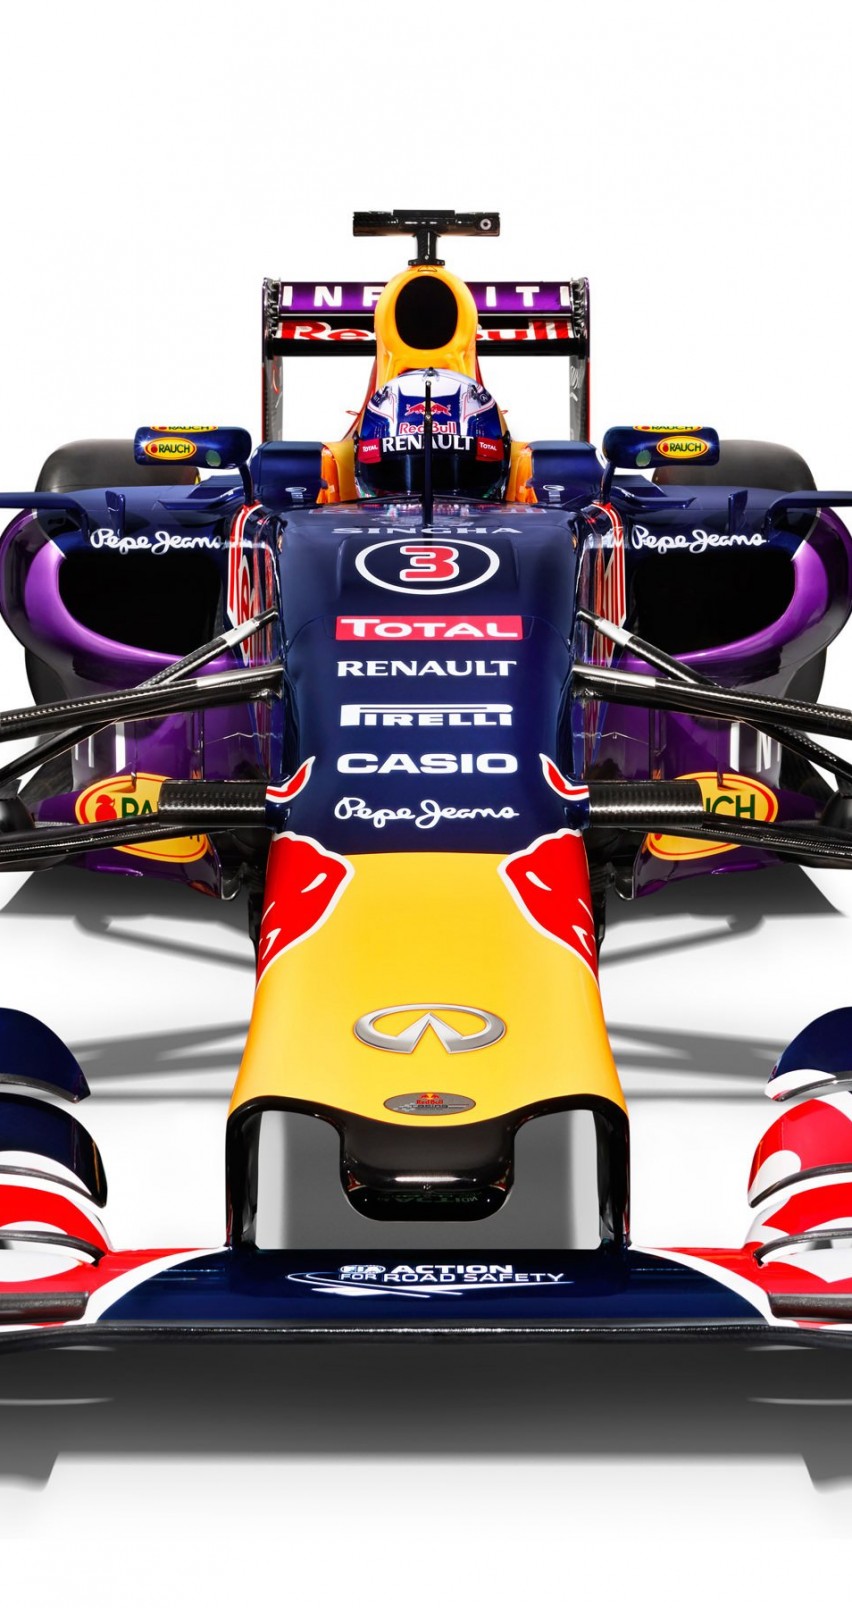 Infiniti Red Bull Racing RB11 2015 Formula 1 Car Wallpaper for Apple iPhone 6 / 6s